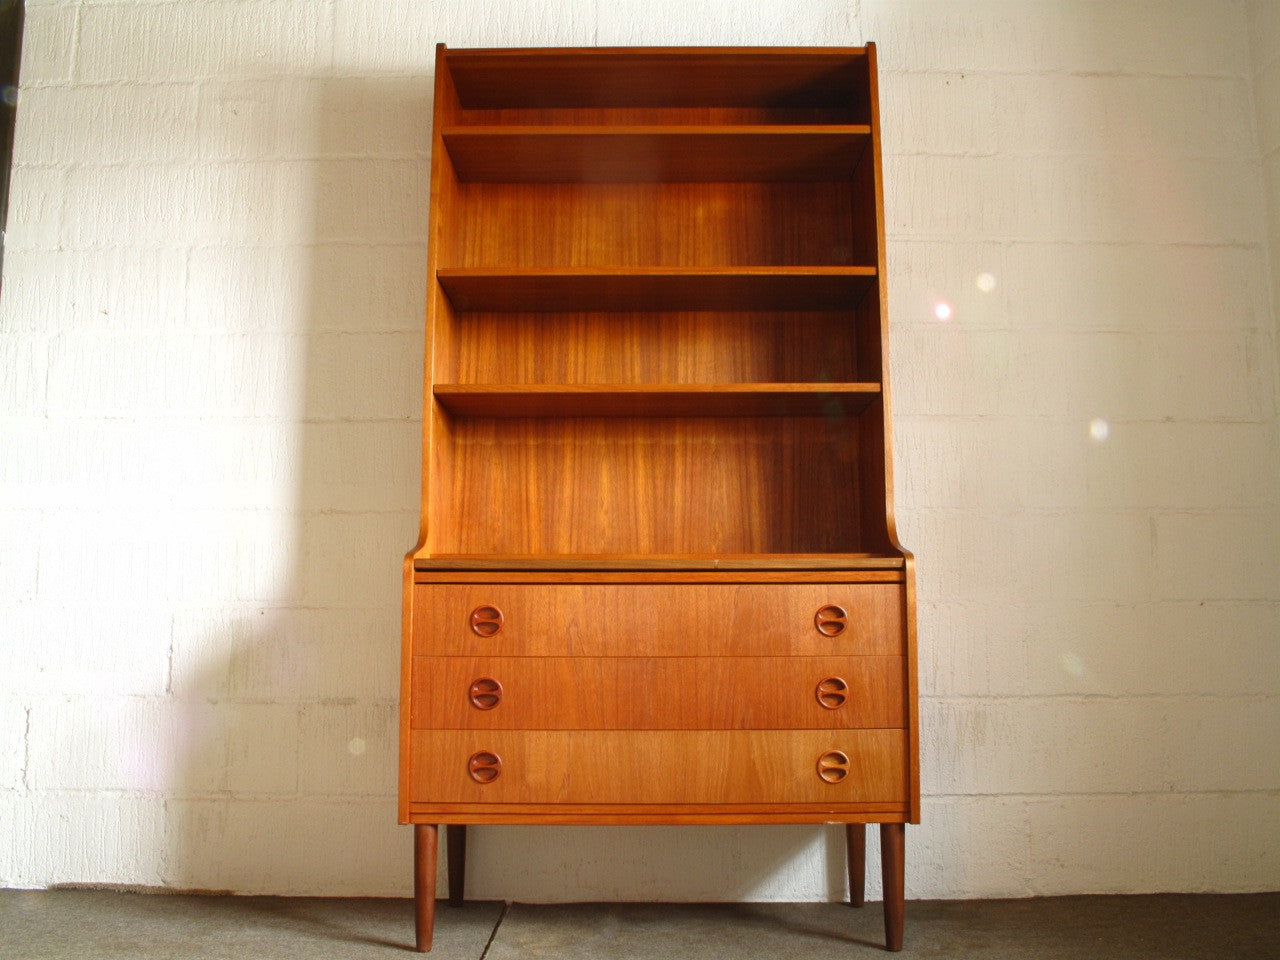 Bureau / bookshelf in teak